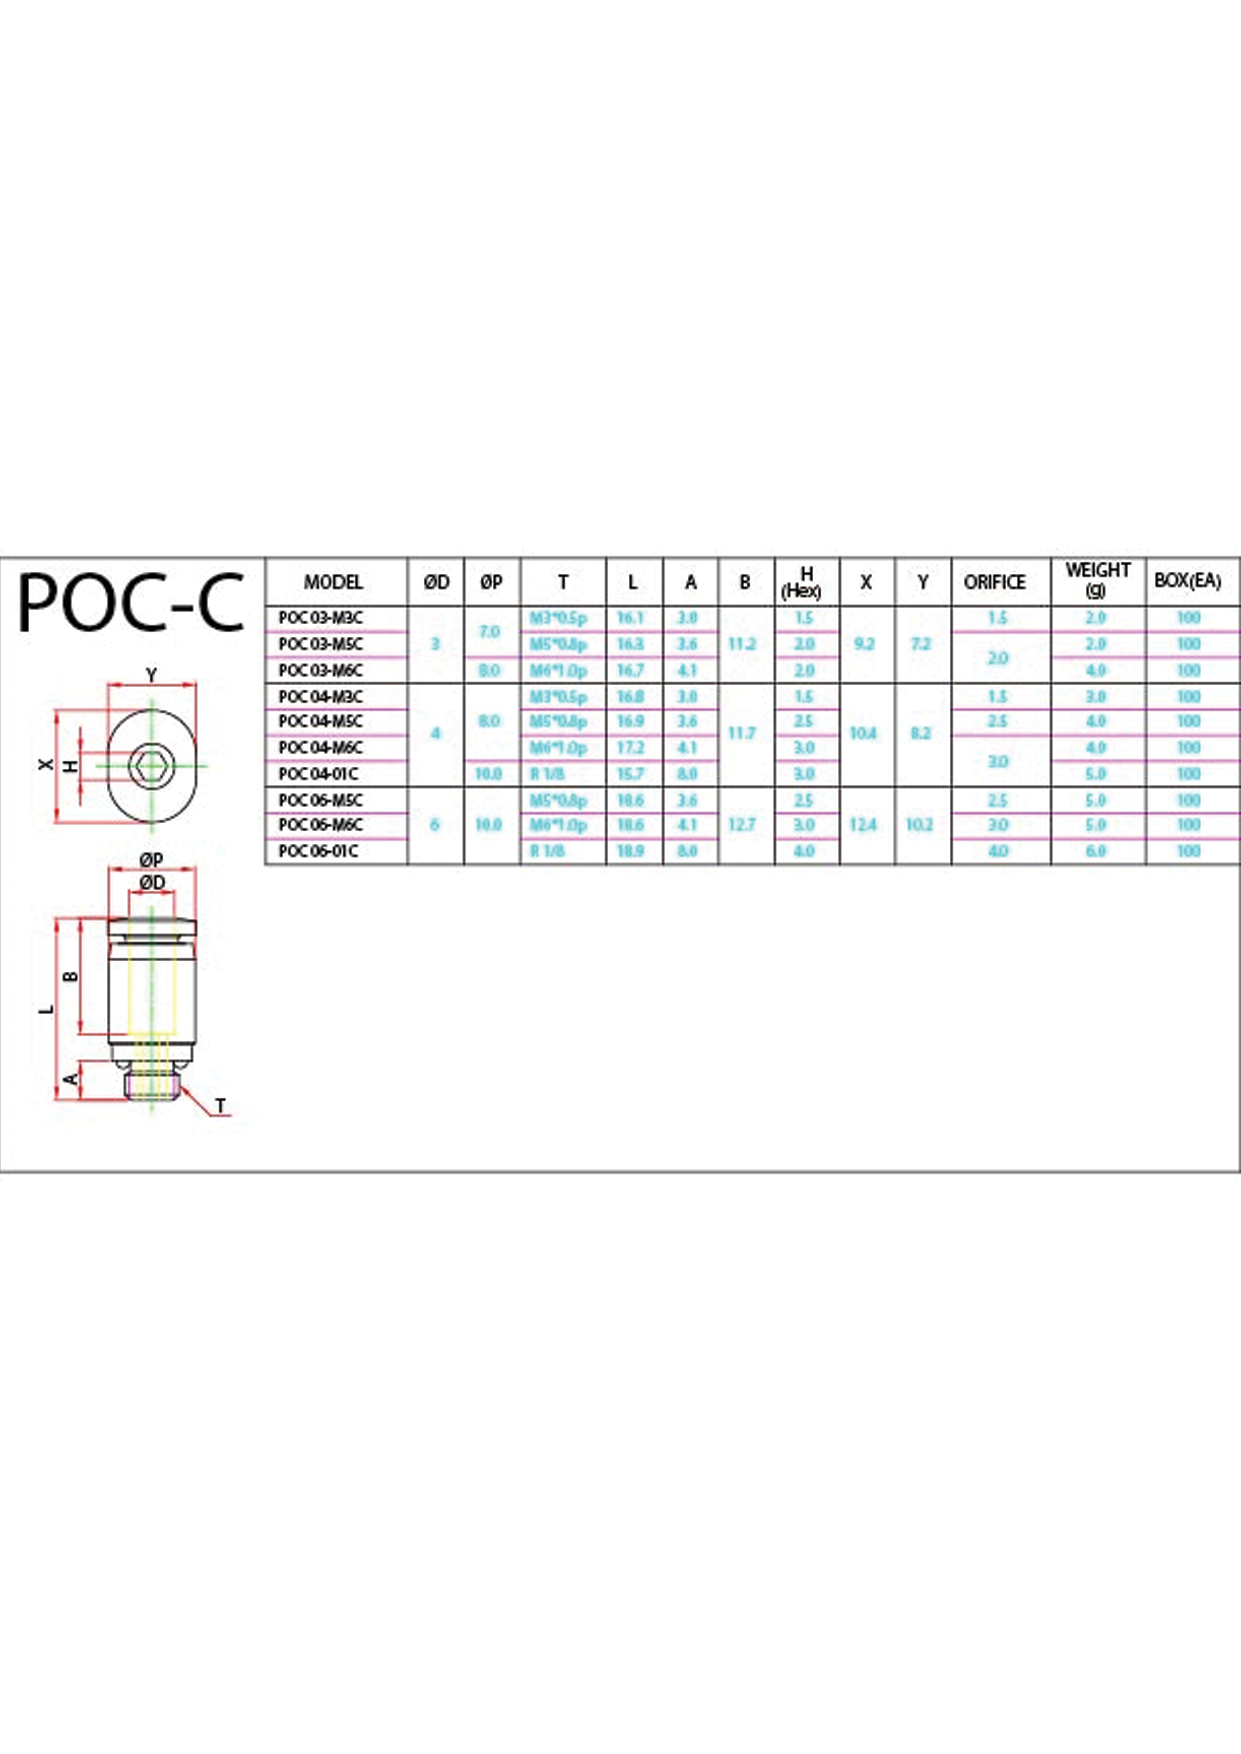 POC-C Data Sheet ( 122 KB )